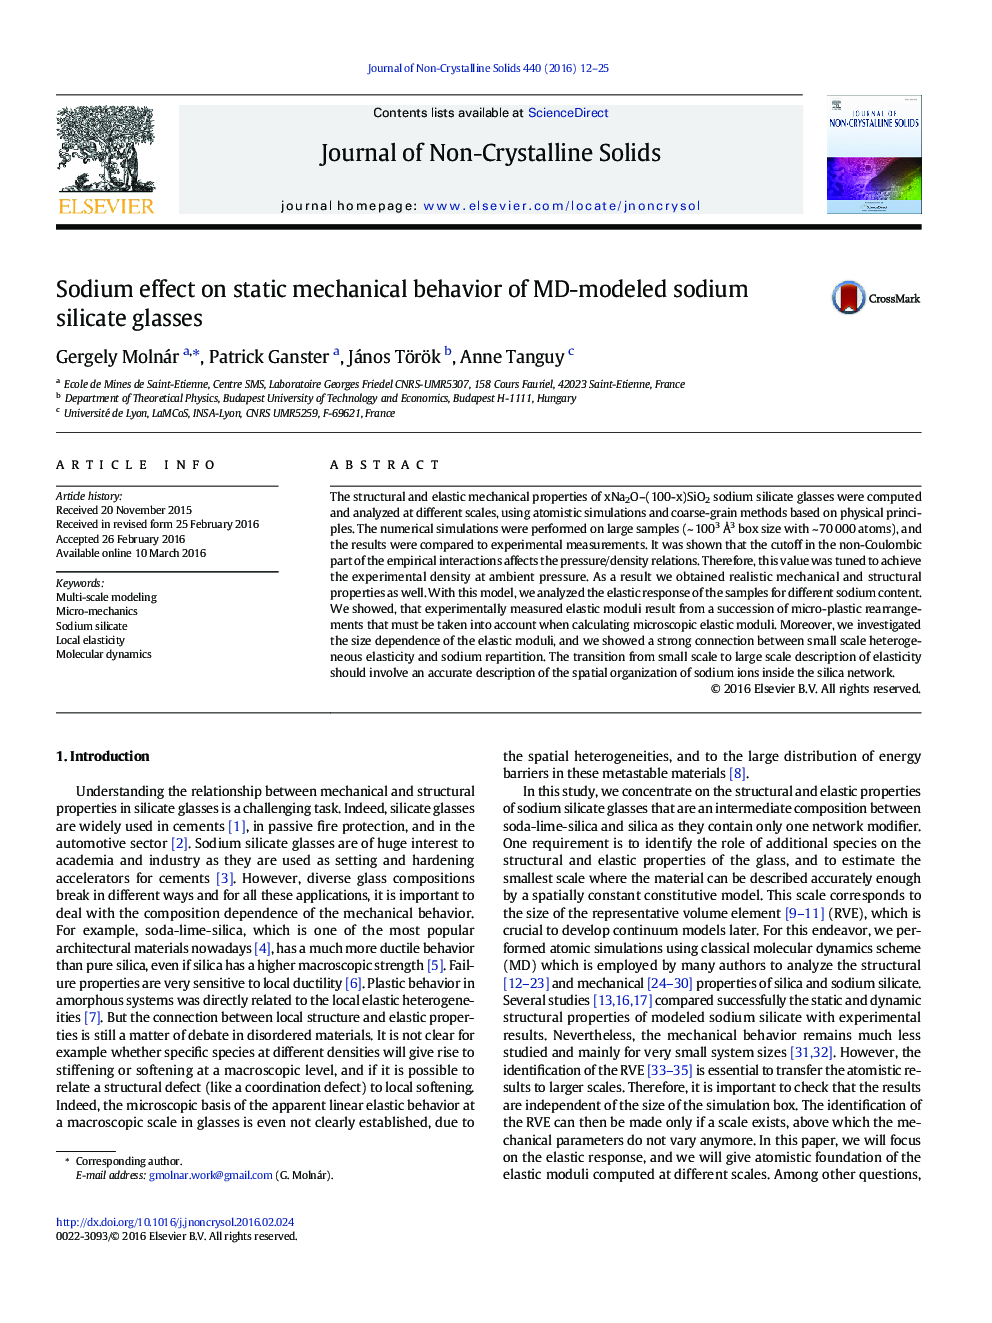 Sodium effect on static mechanical behavior of MD-modeled sodium silicate glasses